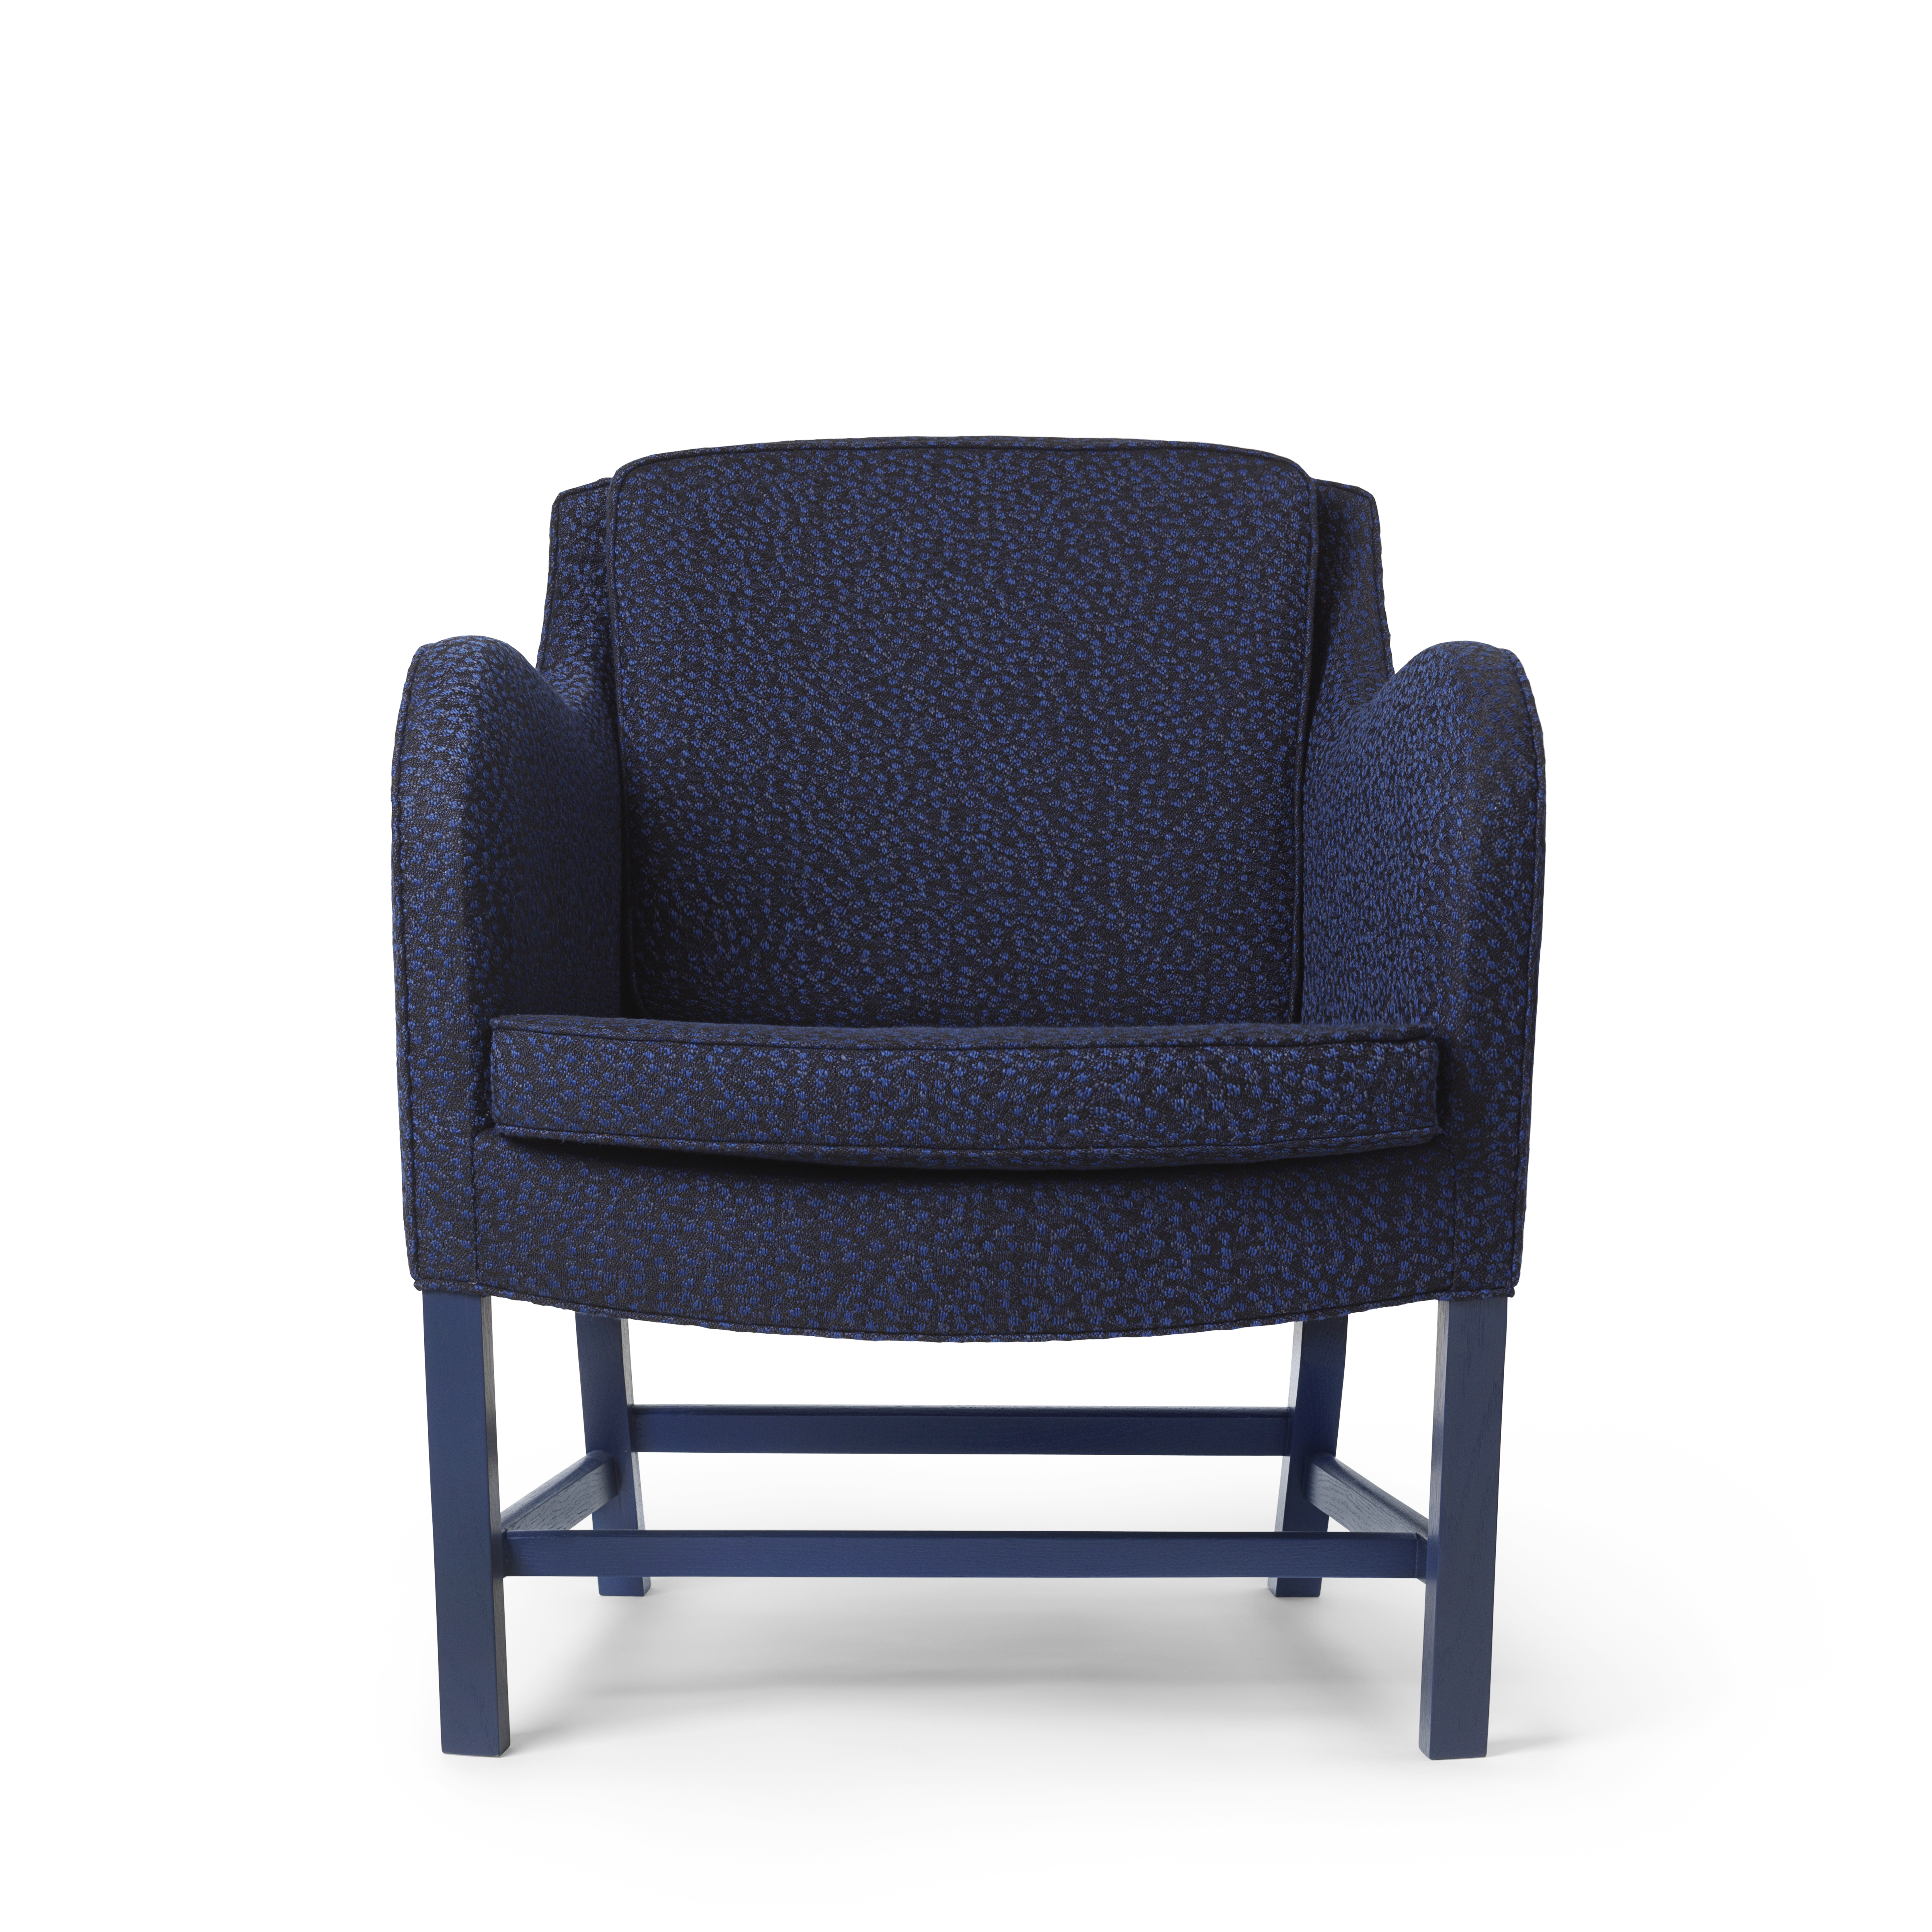 KK43960 Mix Chair eiken klant gespecificeerde buizen HR Ria 791